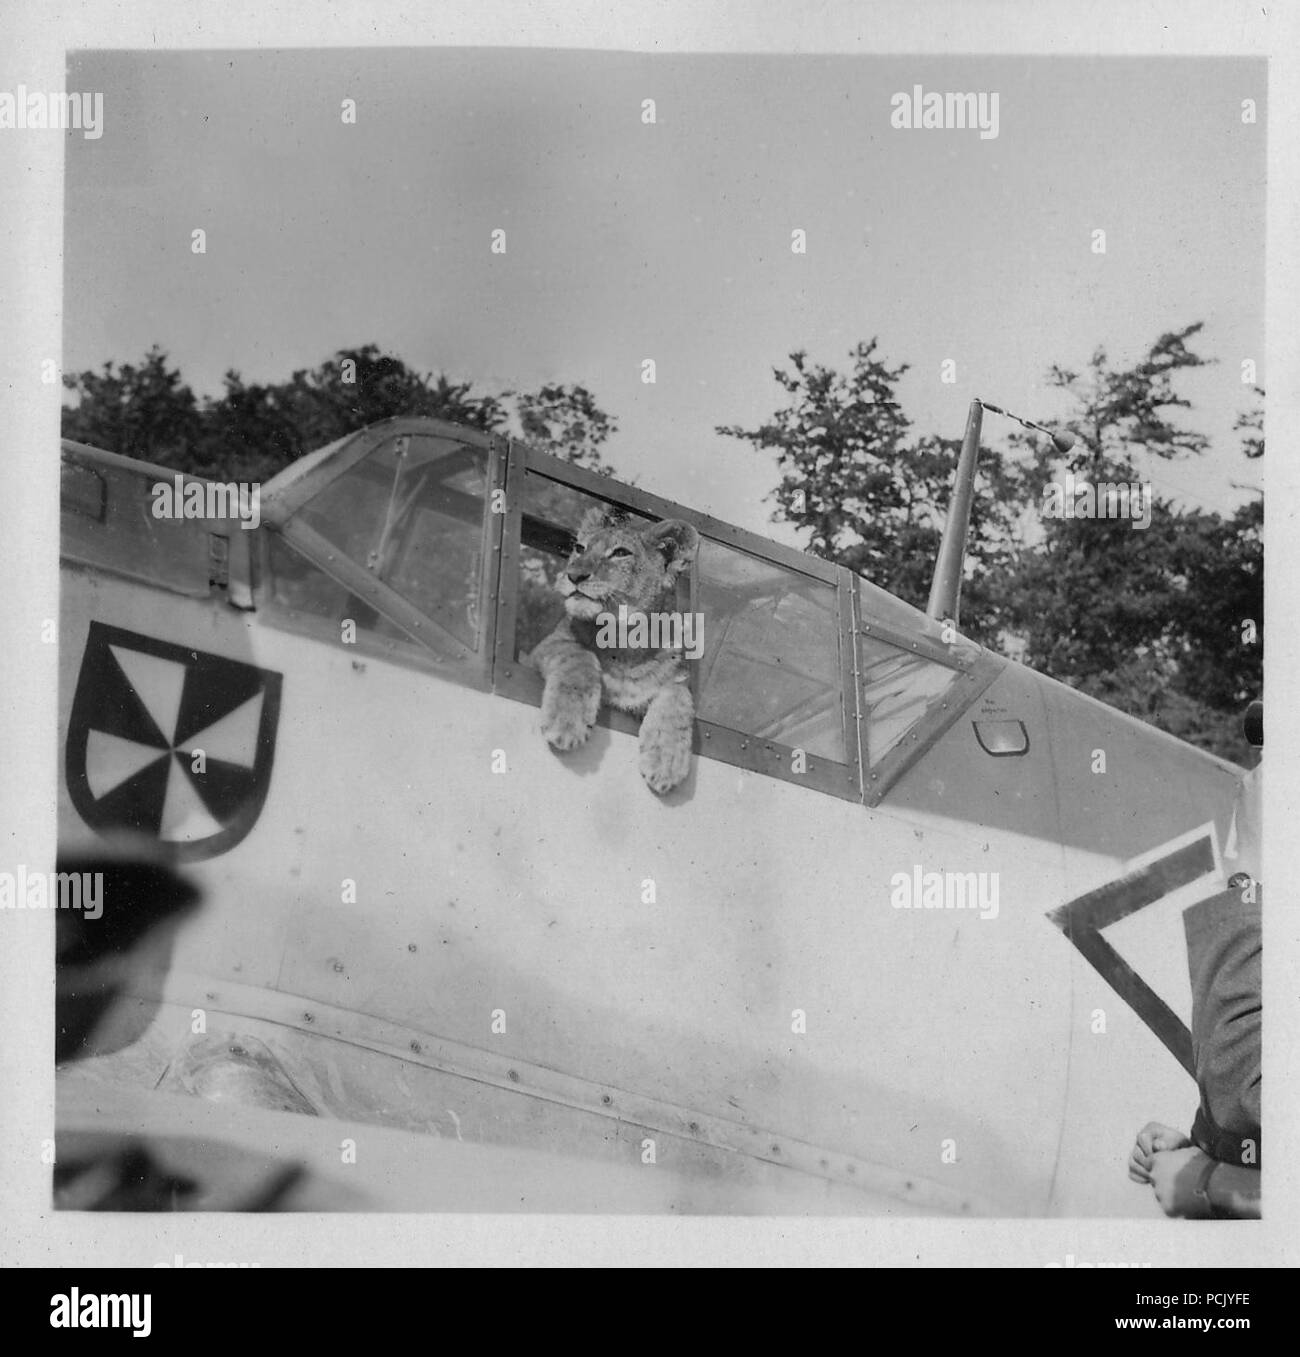 Immagine da un album di foto relative a II. Gruppe, Jagdgeschwader 3: 'Simba', il Lion cub mascotte di II. Gruppe, Jagdgeschwader 3, pone nell'abitacolo della Messerschmitt Bf 109 e di Oberleutnant Franz von Werra (l'Aiutante di II./JG 3). Il Gruppe Badge è chiaramente visibile sulla fusoliera del velivolo, appena più avanti del cockpit. Foto Stock